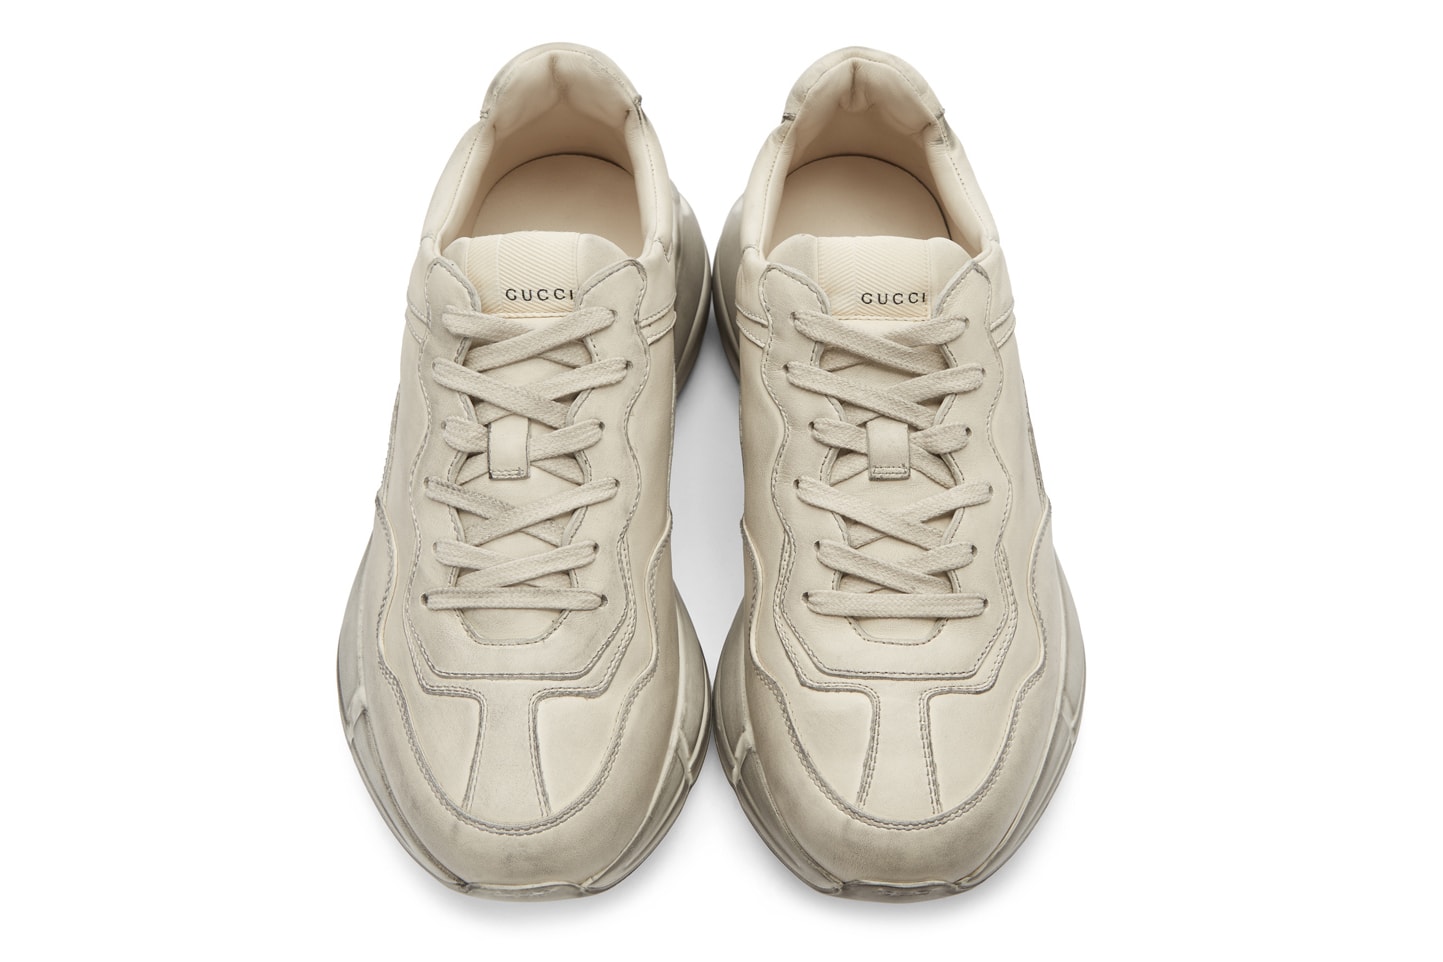 Gucci Rhyton Leather Sneaker White release footwear sneakers